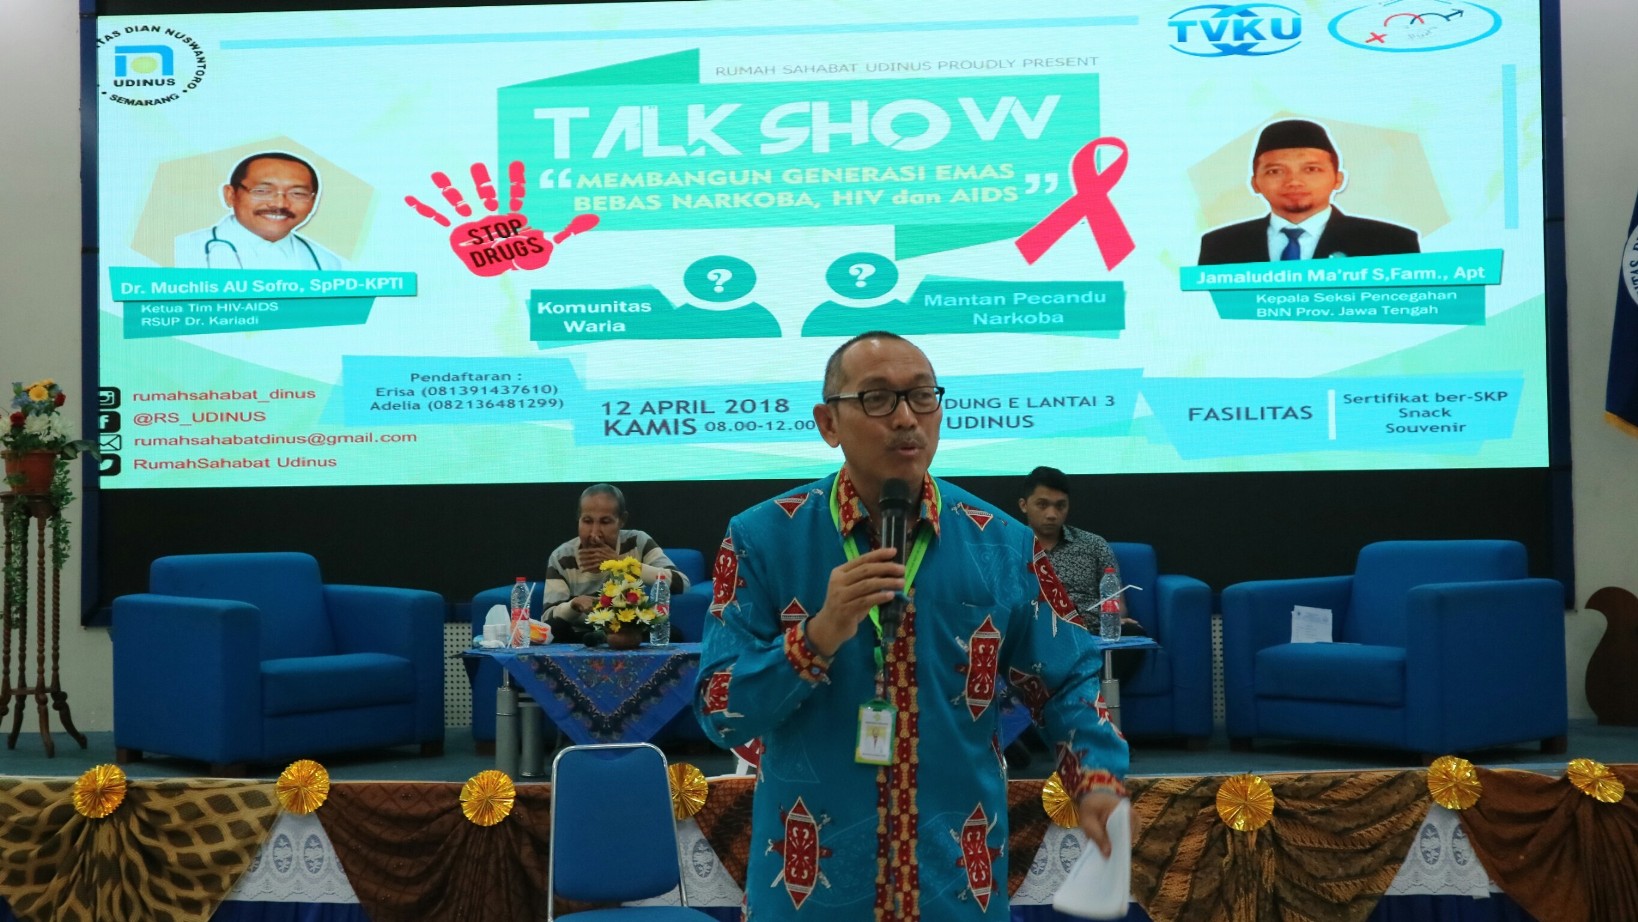 Penyampaian Informasi Mengenai HIV/AIDS